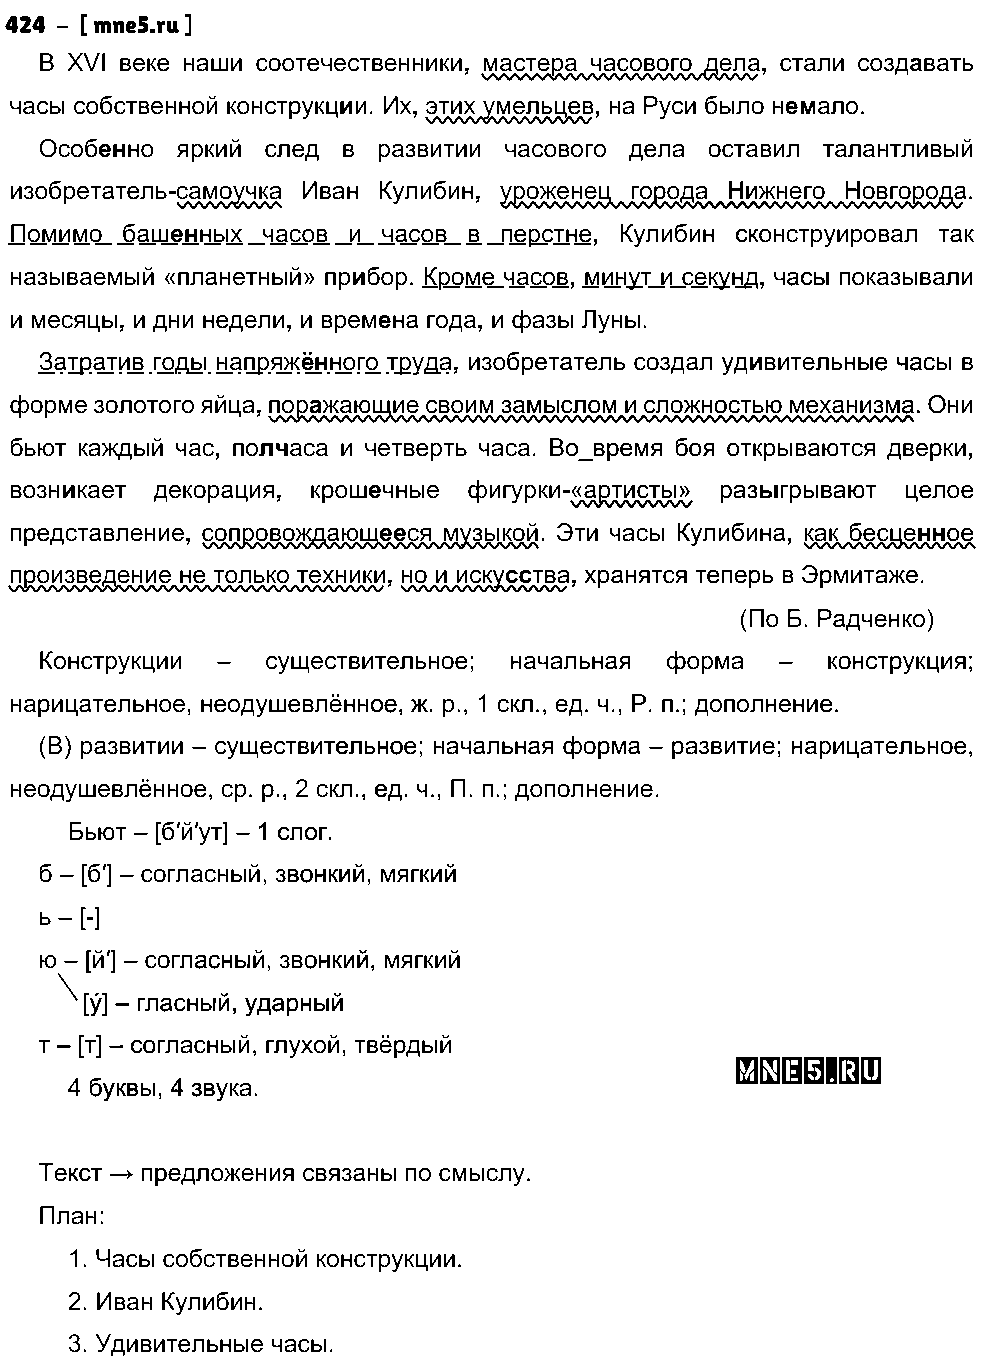 ГДЗ Русский язык 8 класс - 424